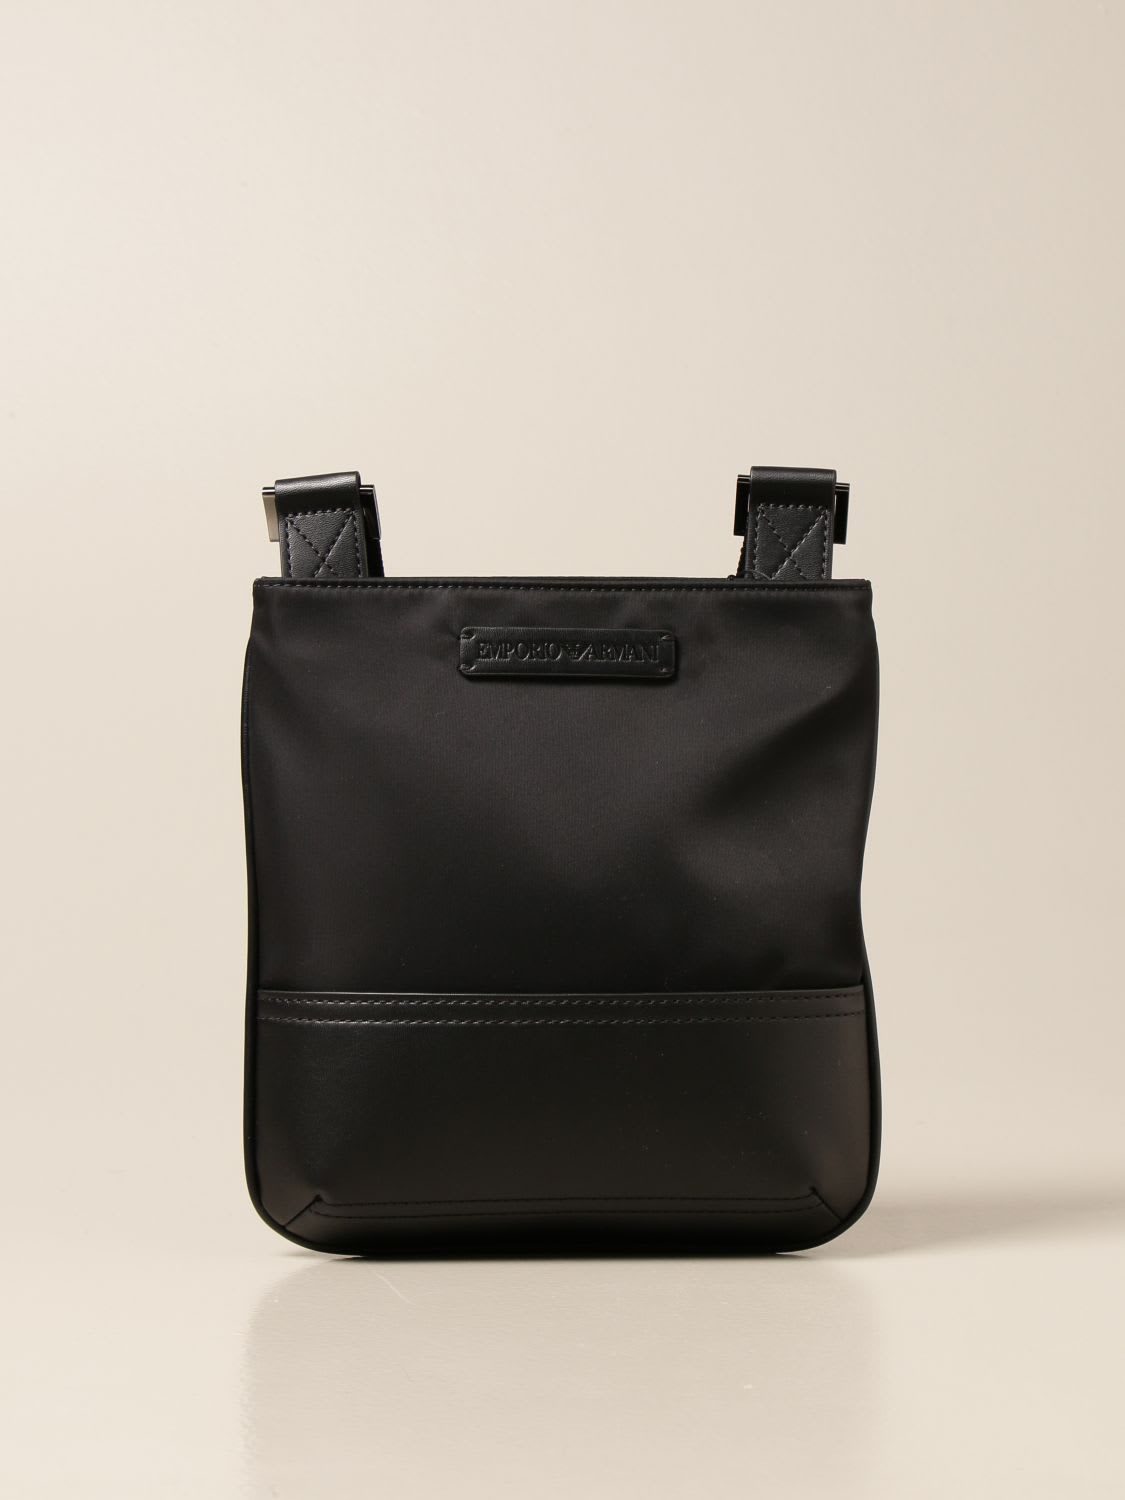 Emporio Armani Shoulder Bag Emporio Armani Crossbody Bag In Nylon